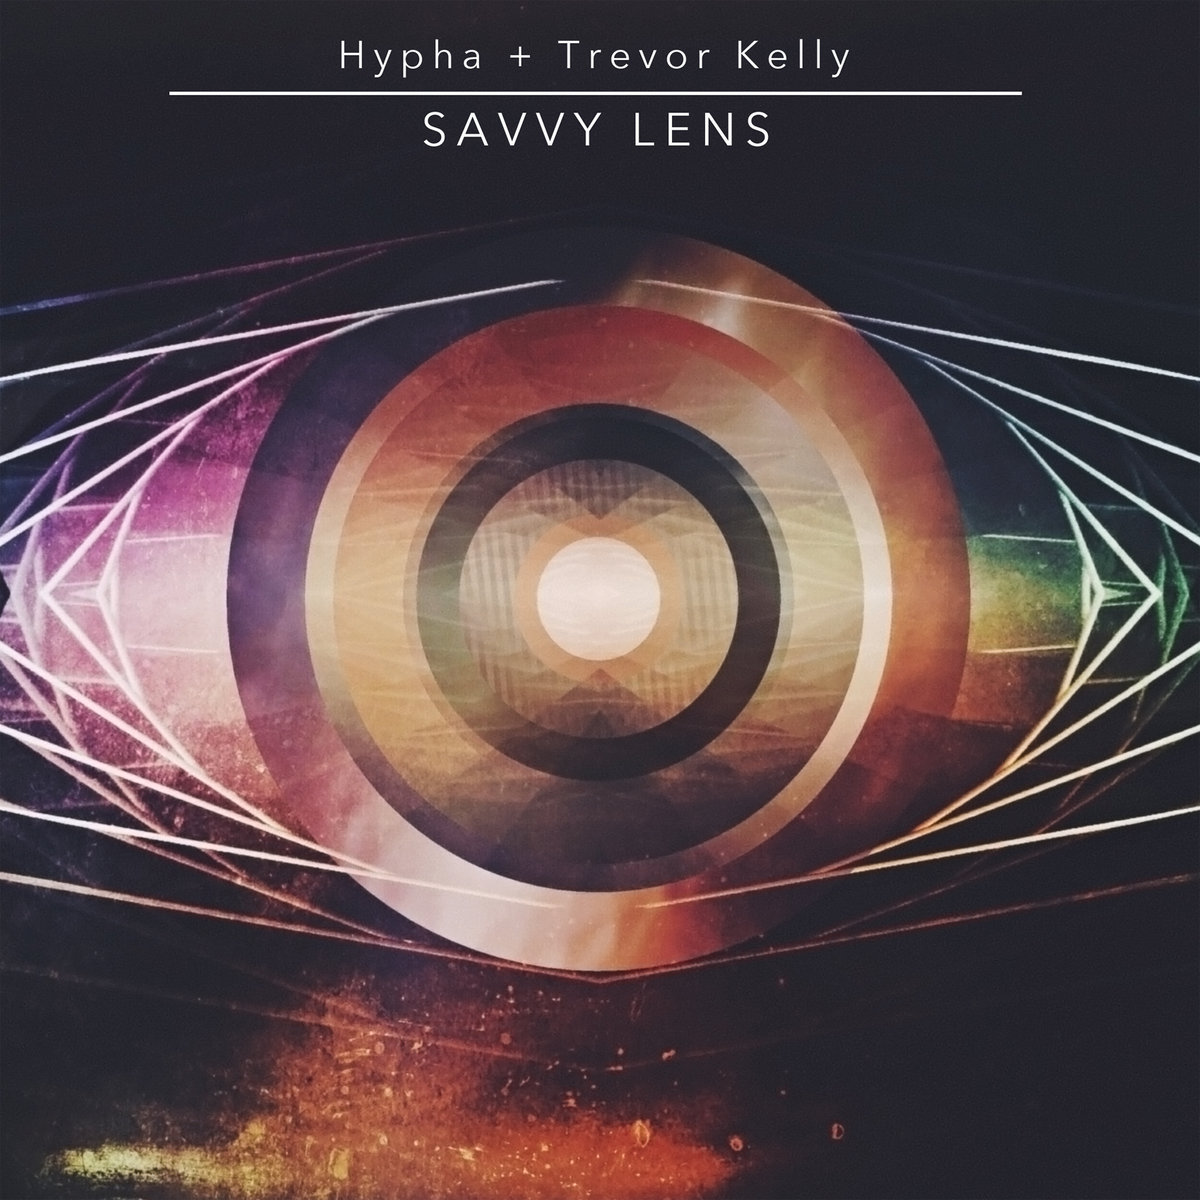 Hypha - Supra (Trevor Kelly Remix) @ 'Savvy Lens' album (Austin)